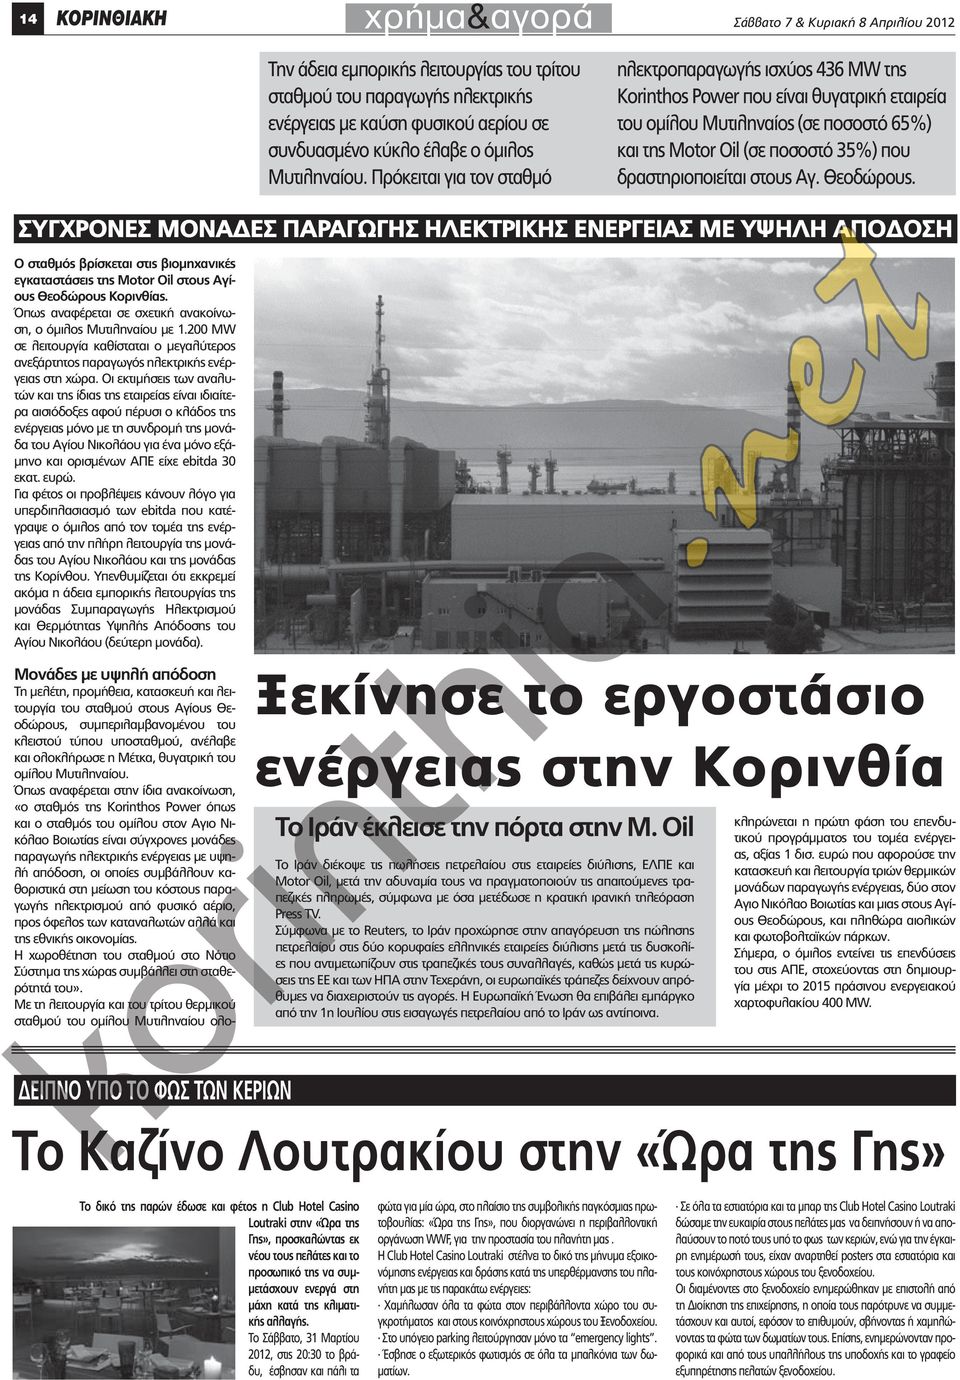 Πρόκειται για τον σταθμό ηλεκτροπαραγωγής ισχύος 436 ΜW της Korinhos Power που είναι θυγατρική εταιρεία του ομίλου Μυτιληναίος (σε ποσοστό 65%) και της Moor Oil (σε ποσοστό 35%) που δραστηριοποιείται